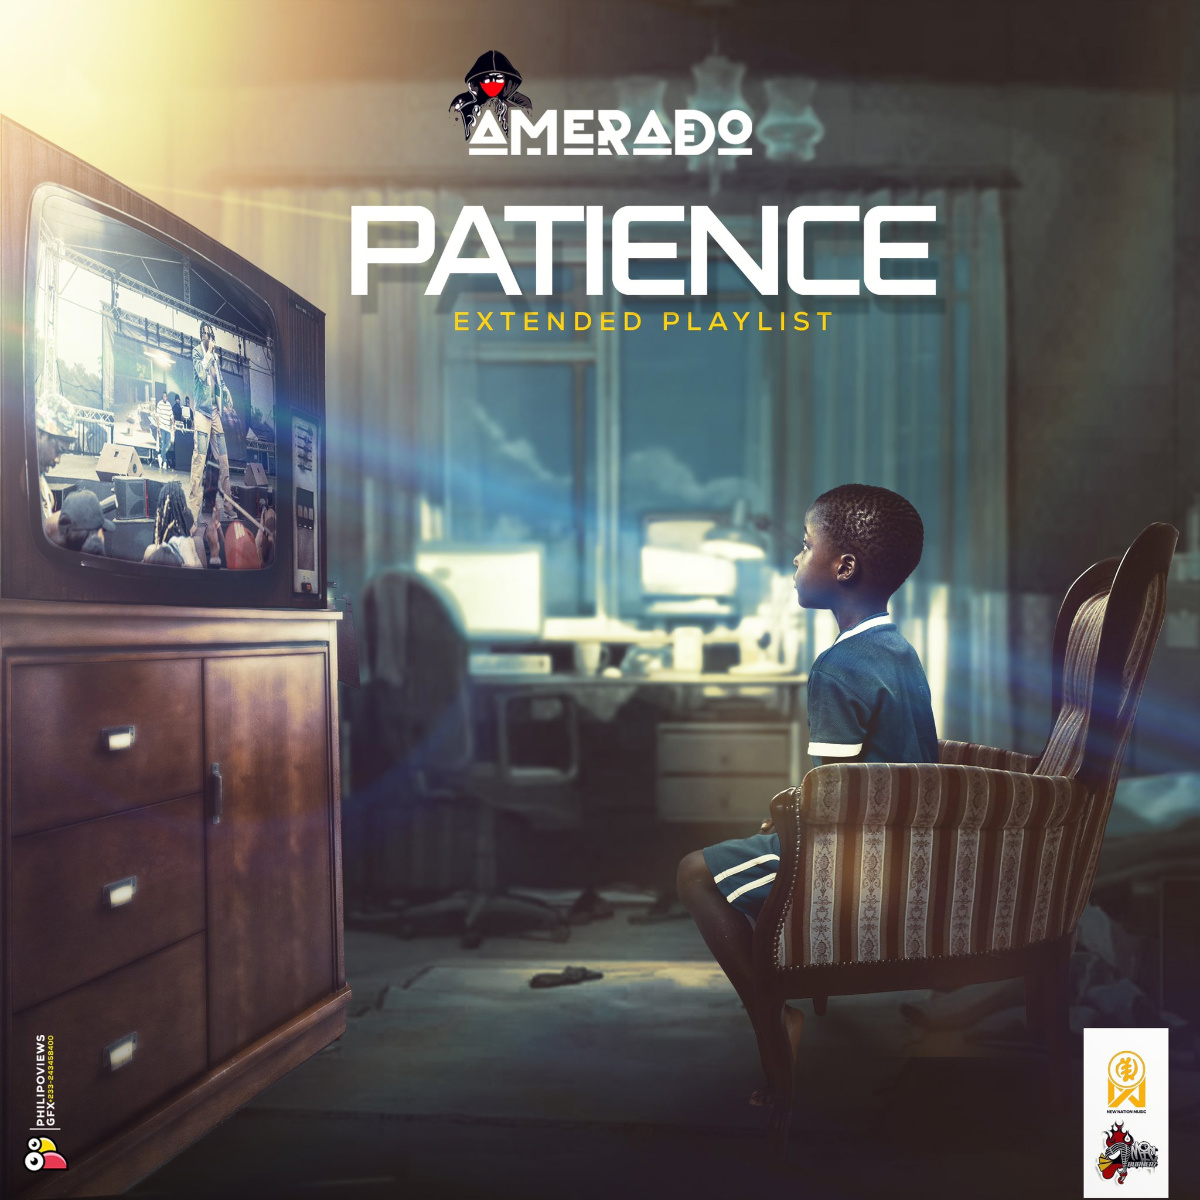 Patience by Amerado